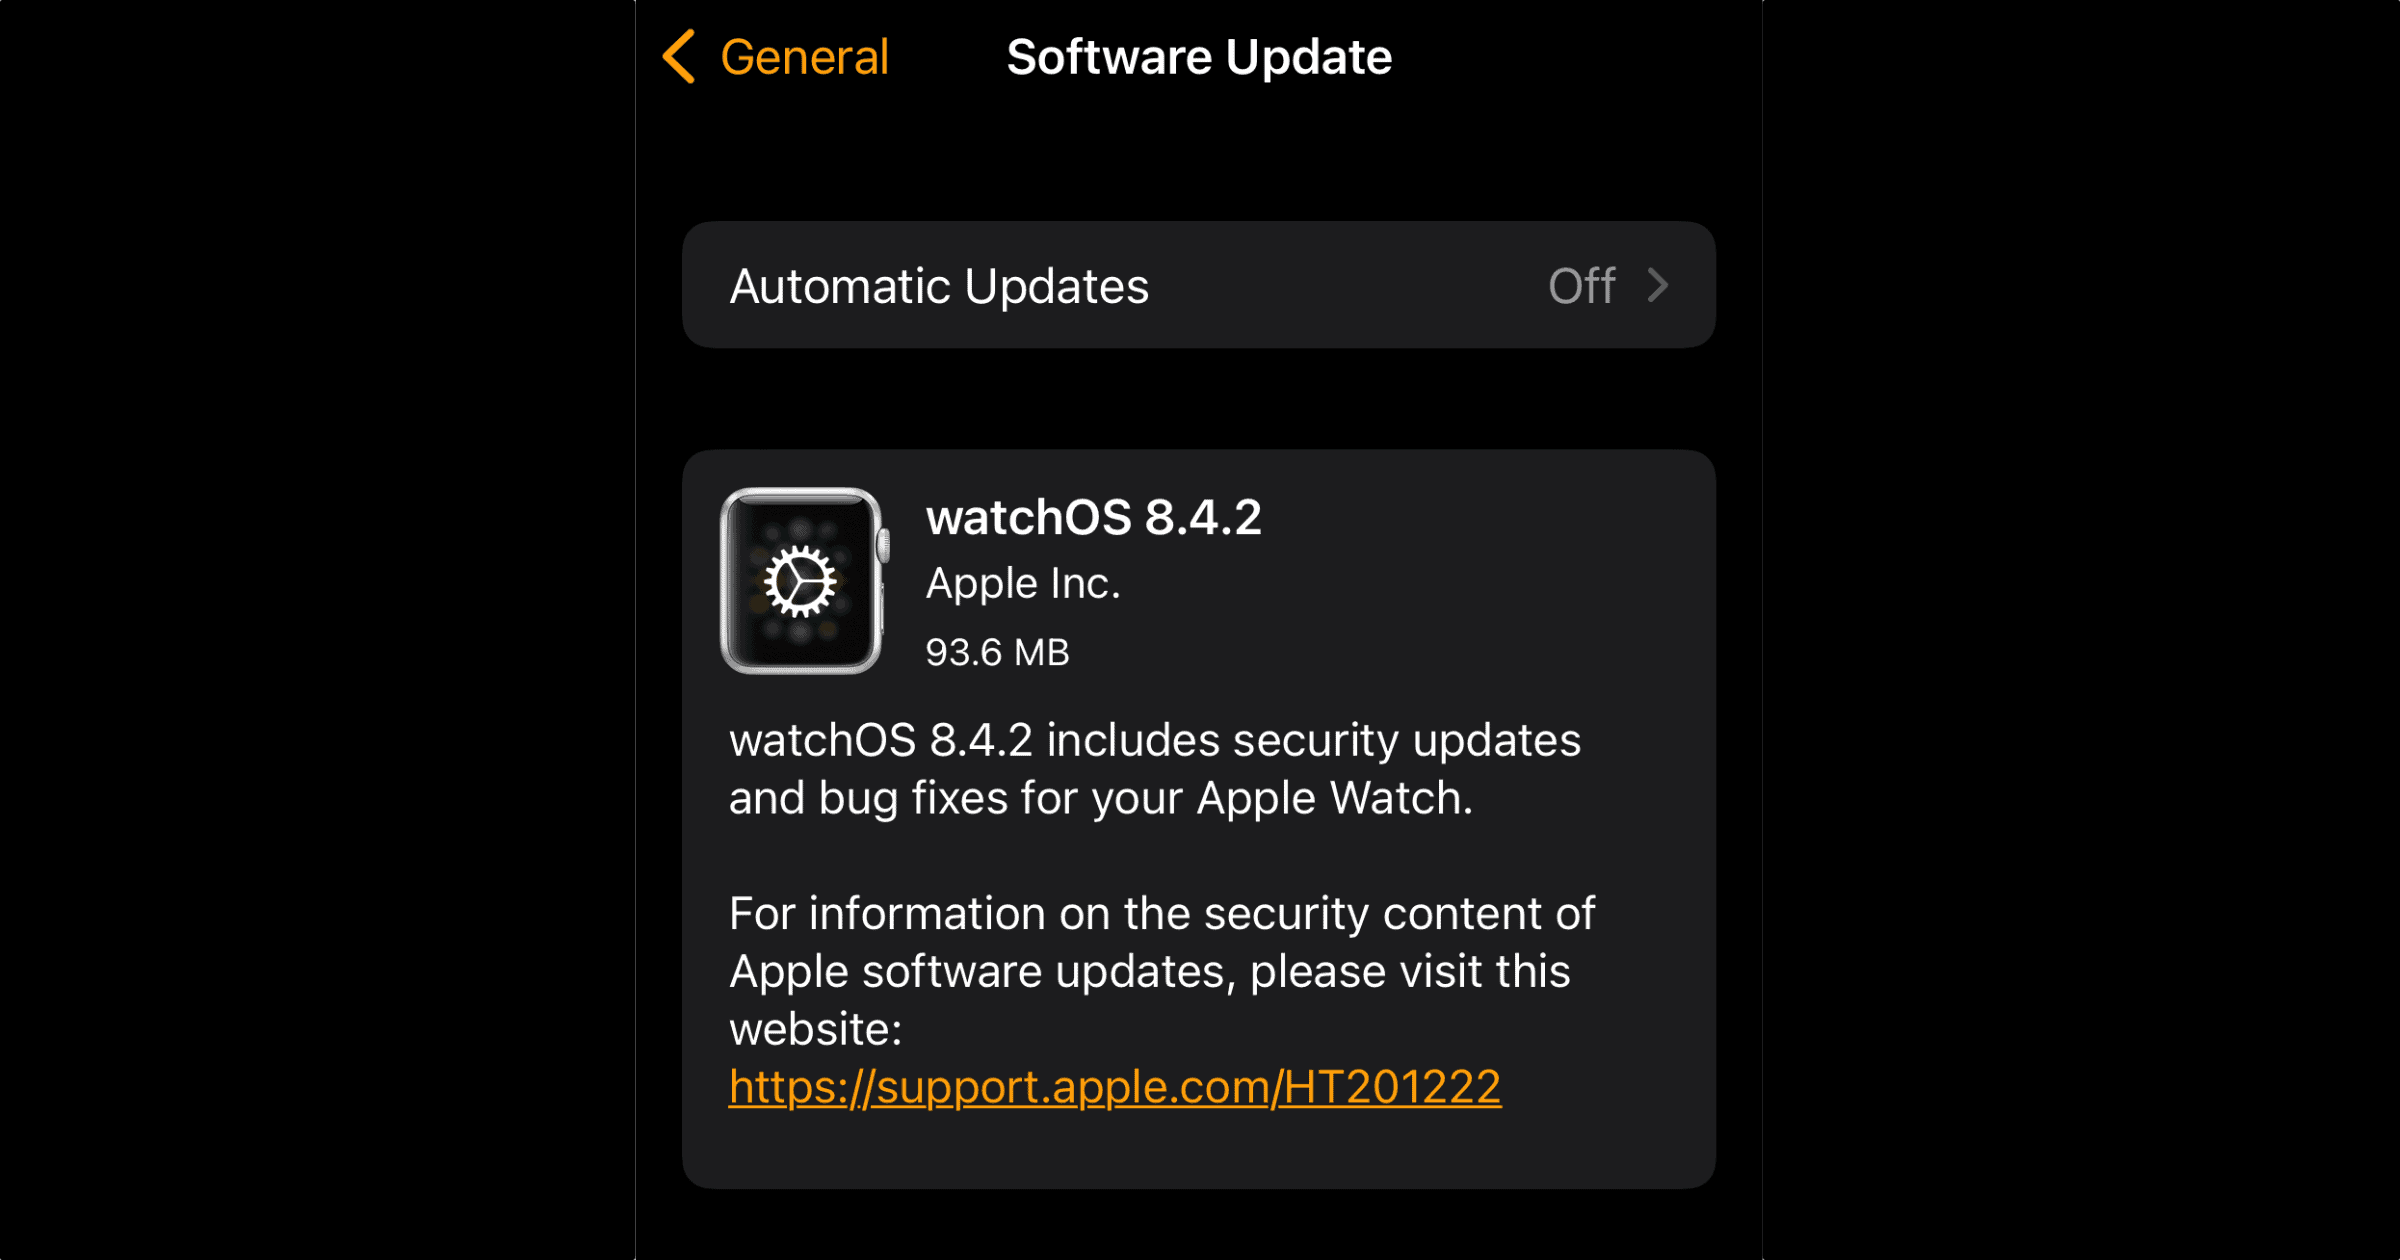 watchOS 8.4.2